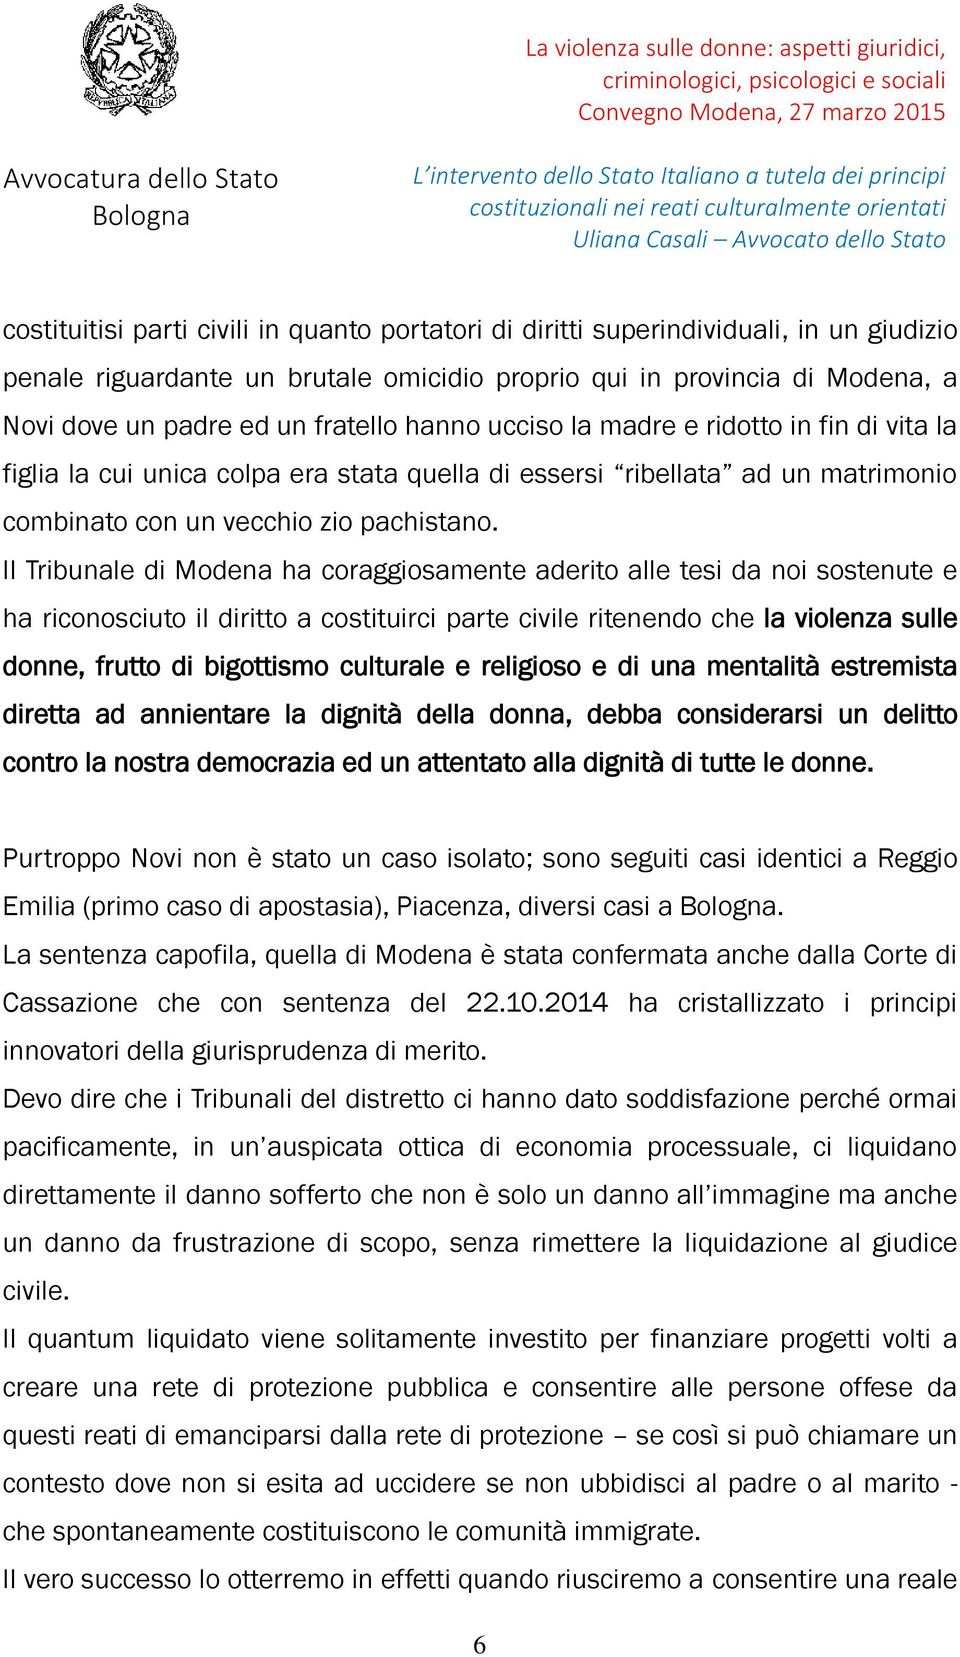 Il Tribunale di Modena ha coraggiosamente aderito alle tesi da noi sostenute e ha riconosciuto il diritto a costituirci parte civile ritenendo che la violenza sulle donne, frutto di bigottismo